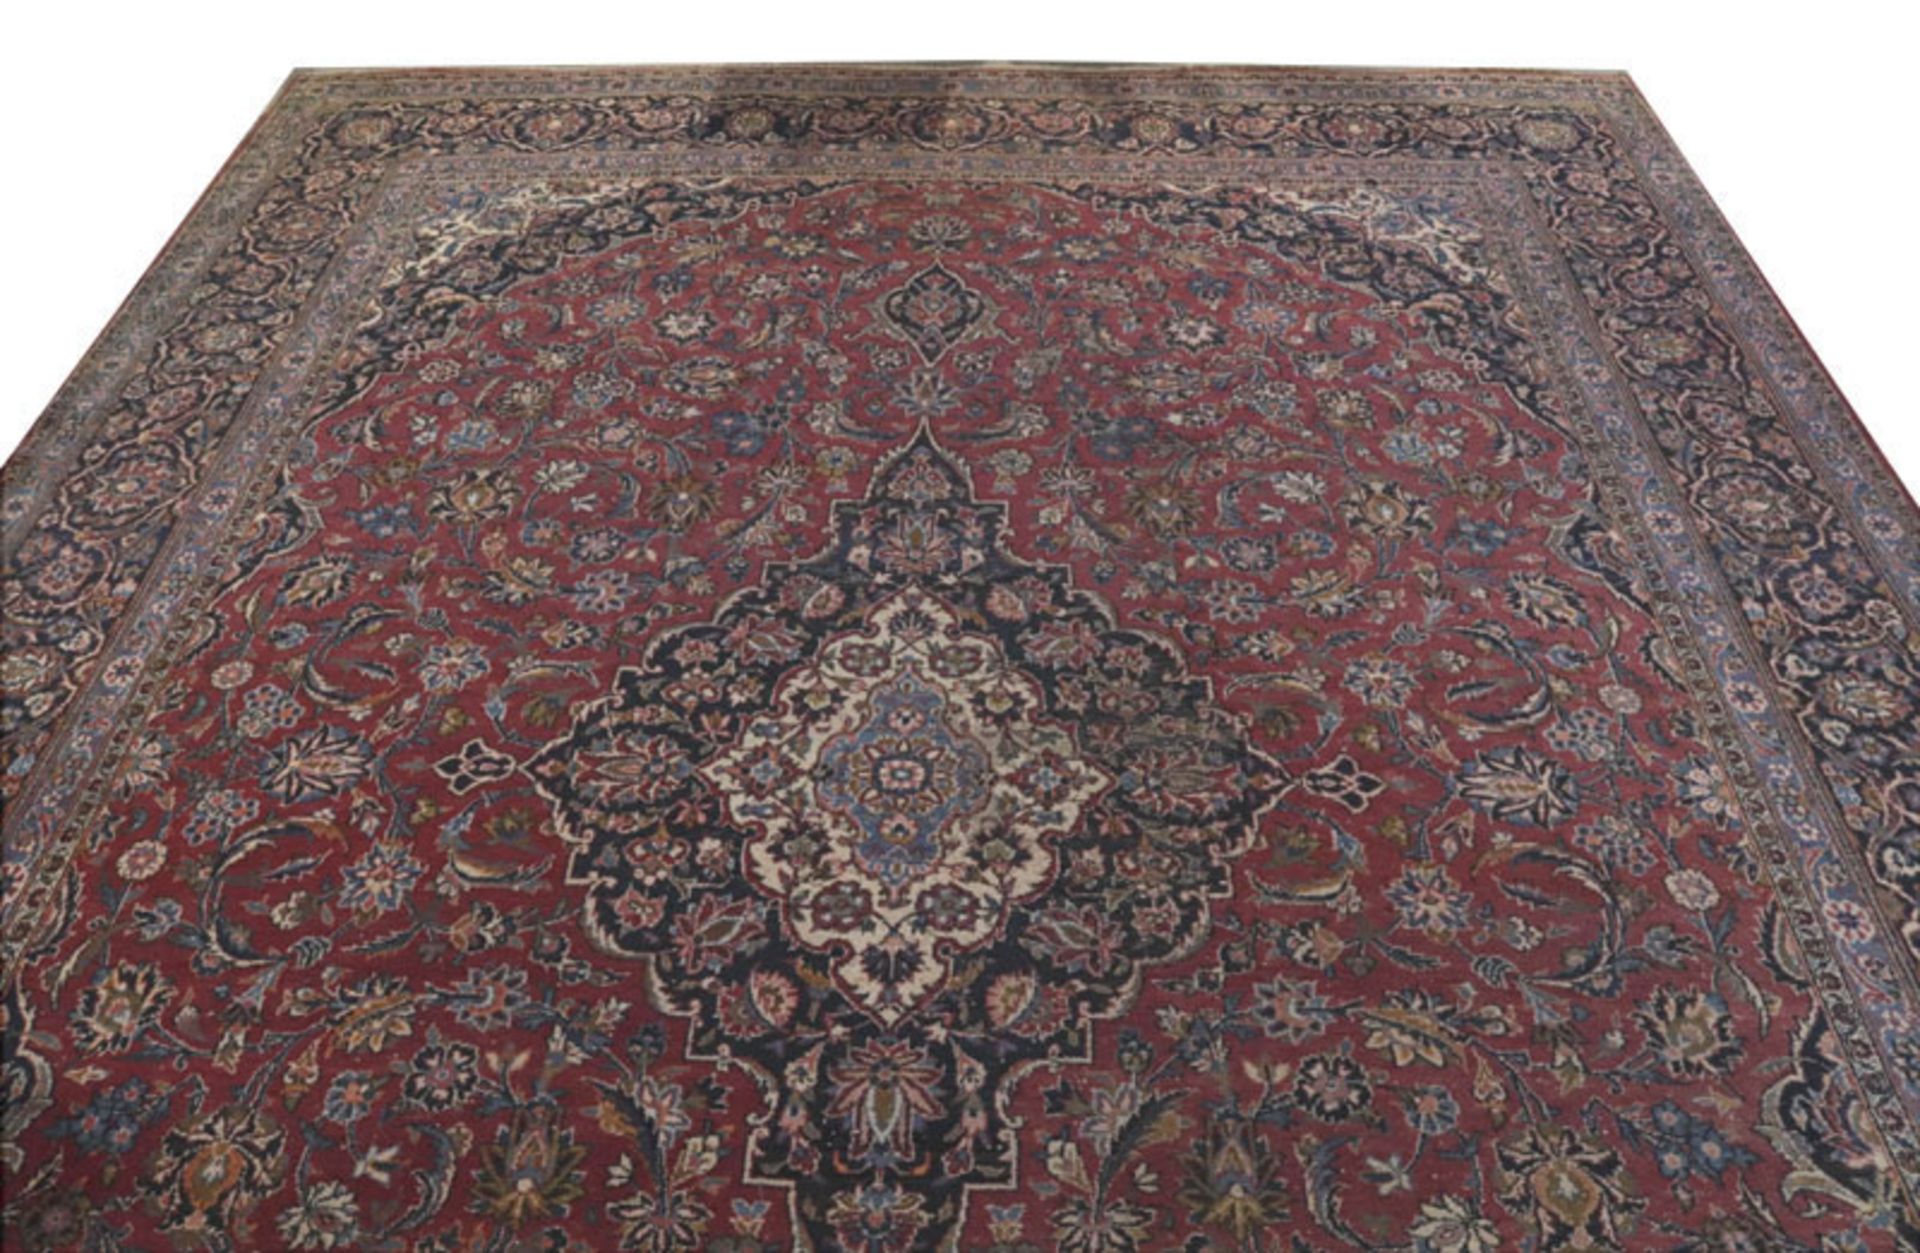 Teppich, Keshan, rot/blau/bunt, Gebrauchsspuren, teils verschossen, 315 cm x 270 cm, Abholung oder